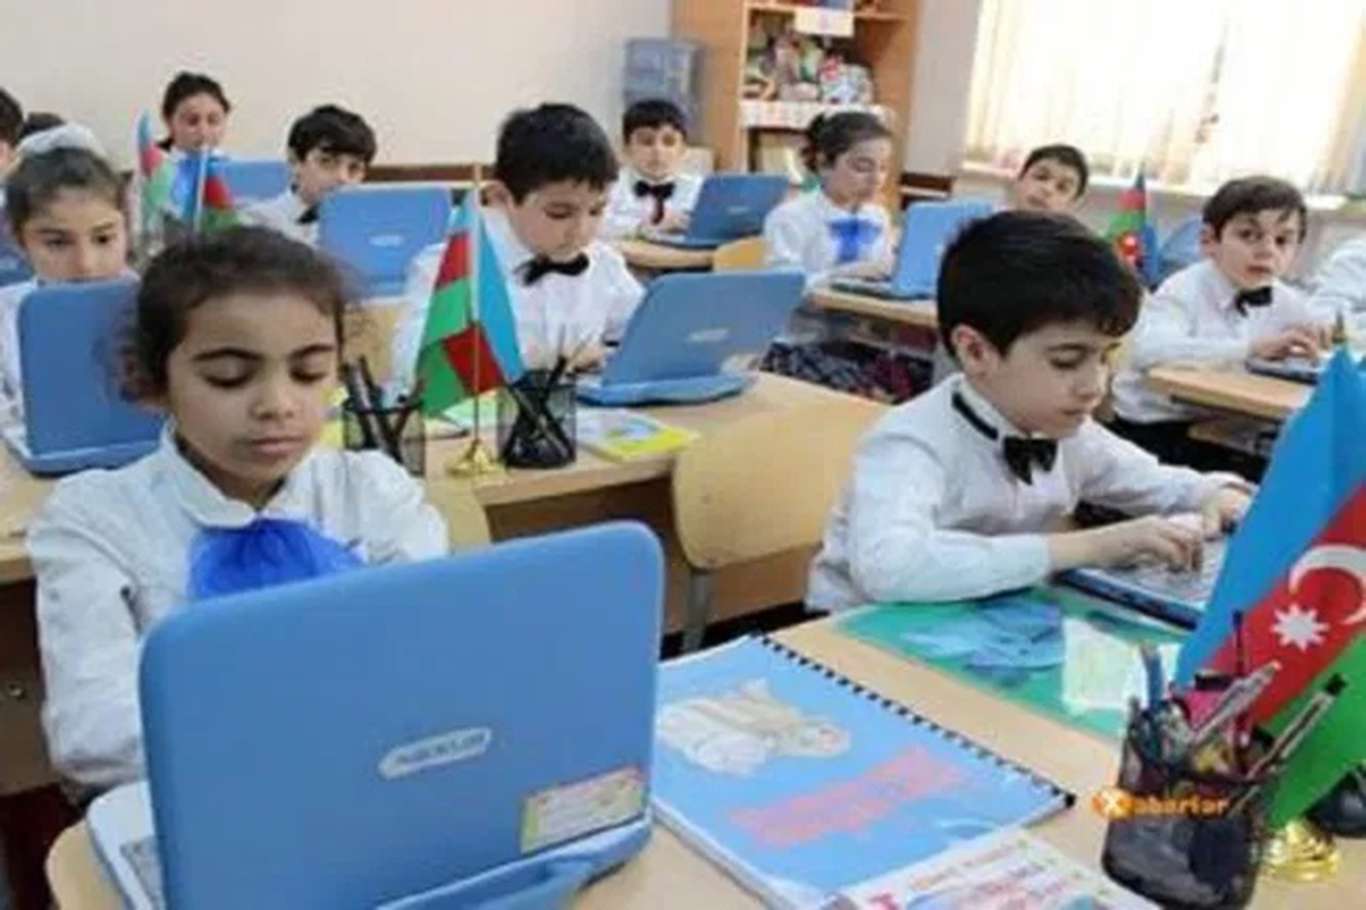 Azerbaycan'da 1 Şubat'tan itibaren eğitime başlama kararı alındı